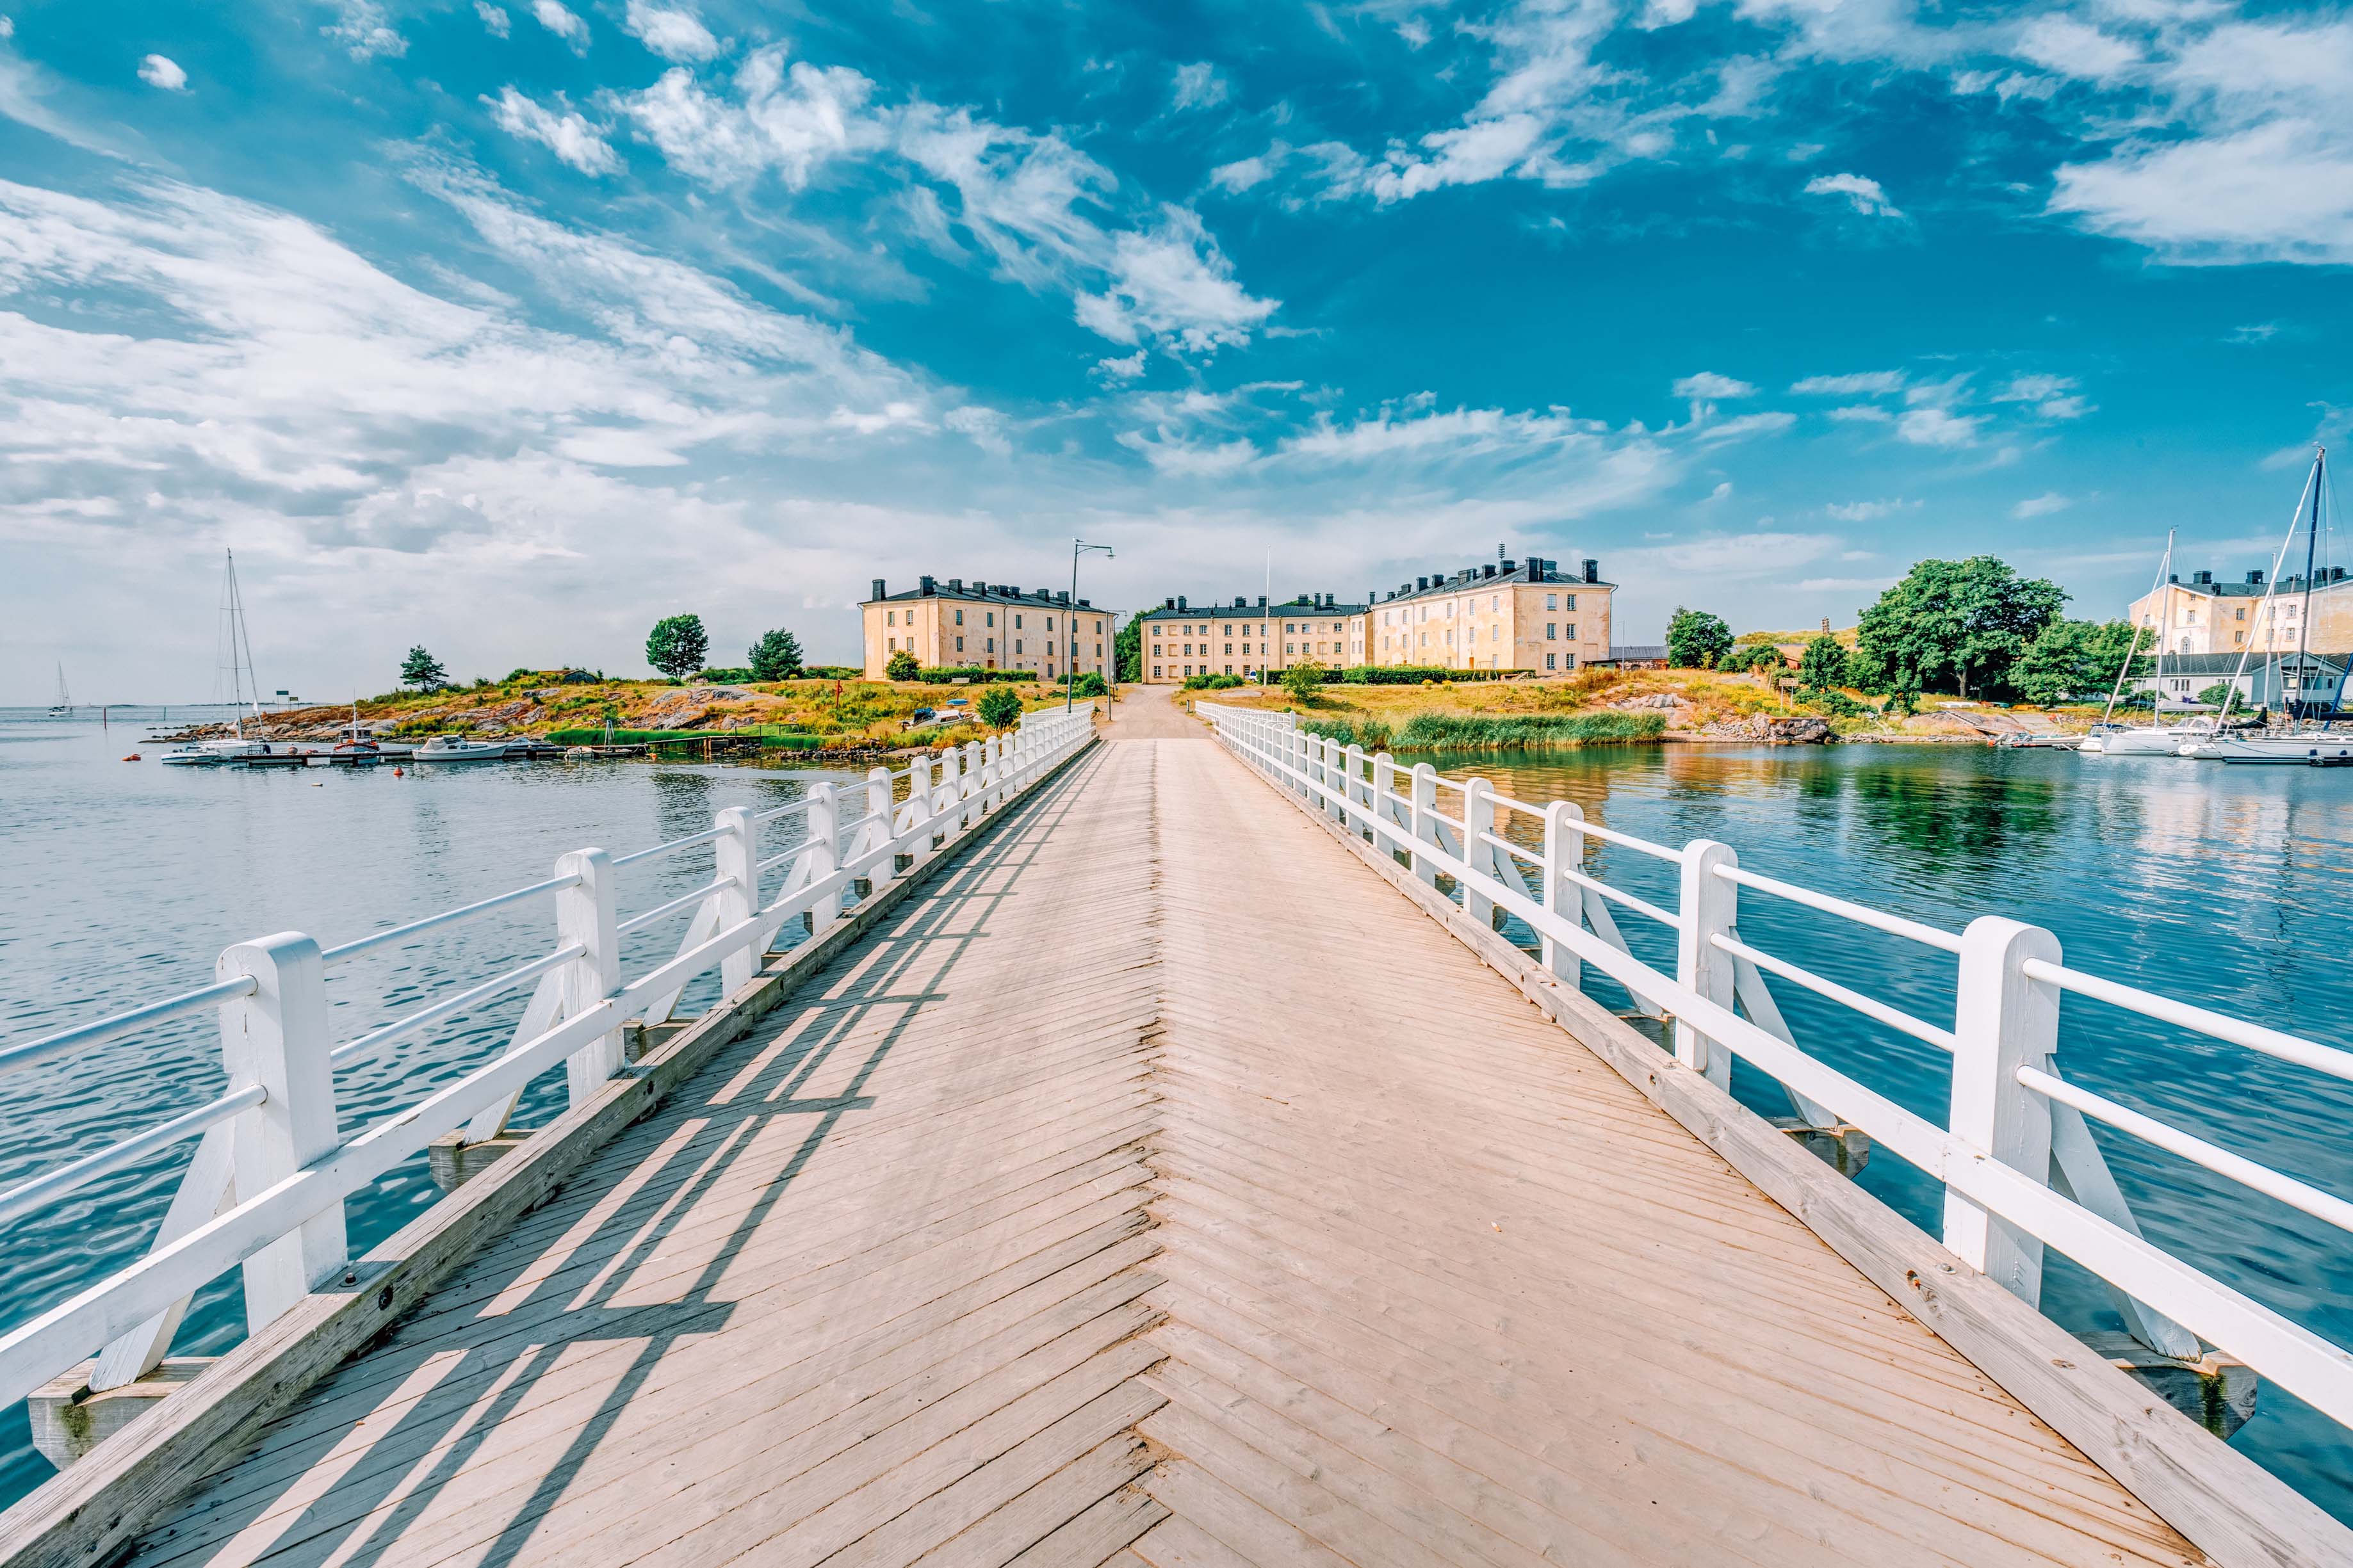 Foto panoramica di un ponte che conduce alla fortezza dell'isola di Suomenlinna